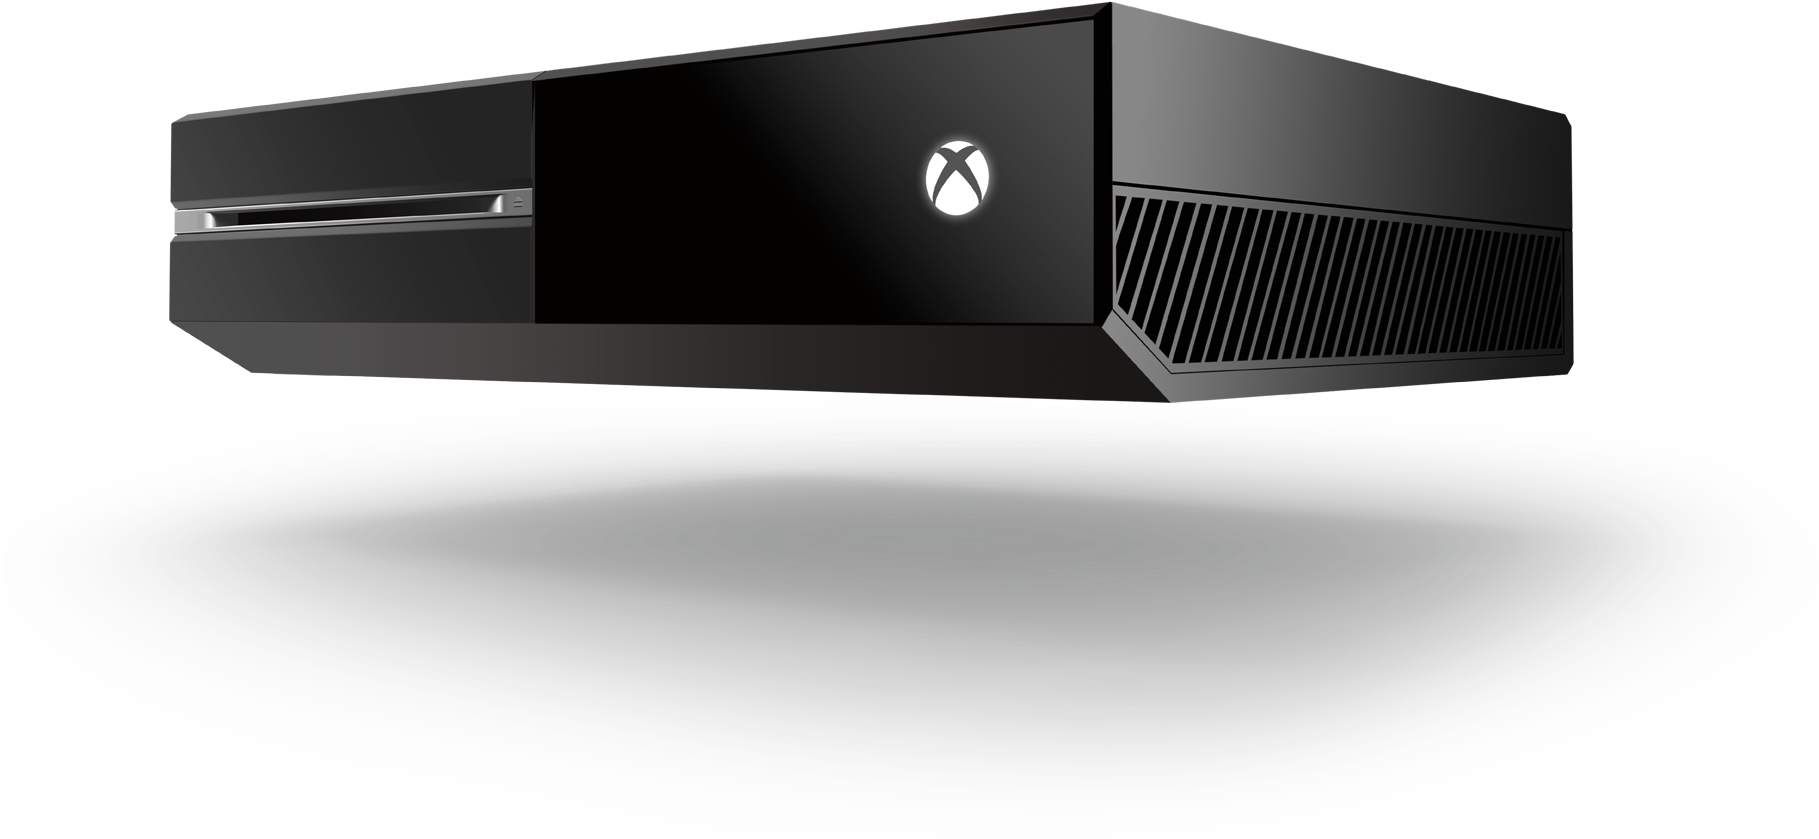 Xbox One Console Black